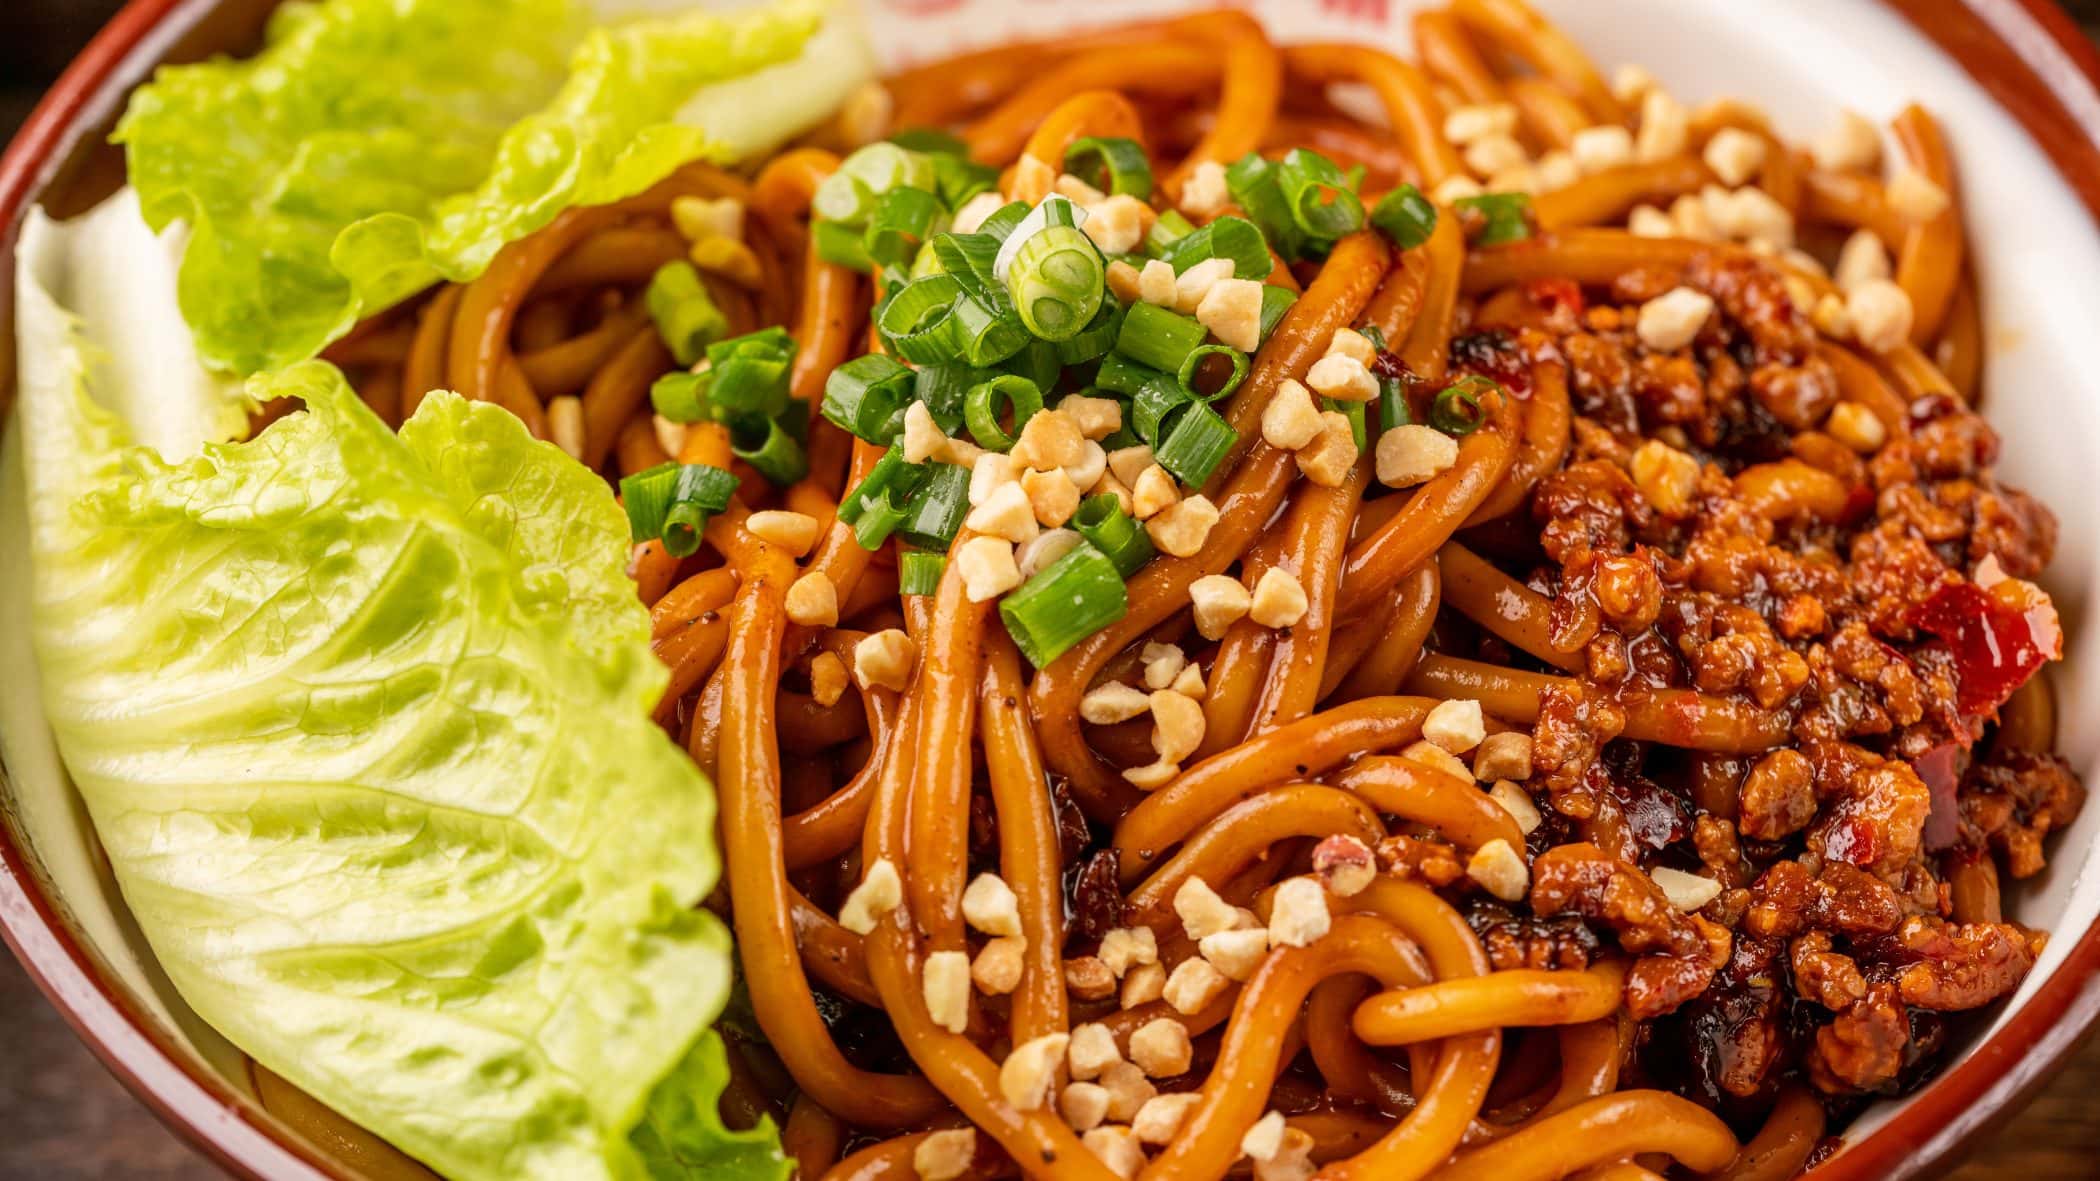 Chinese Hot and Dry Noodles mit Salatblatt in einer braunen Schale. Draufsicht.